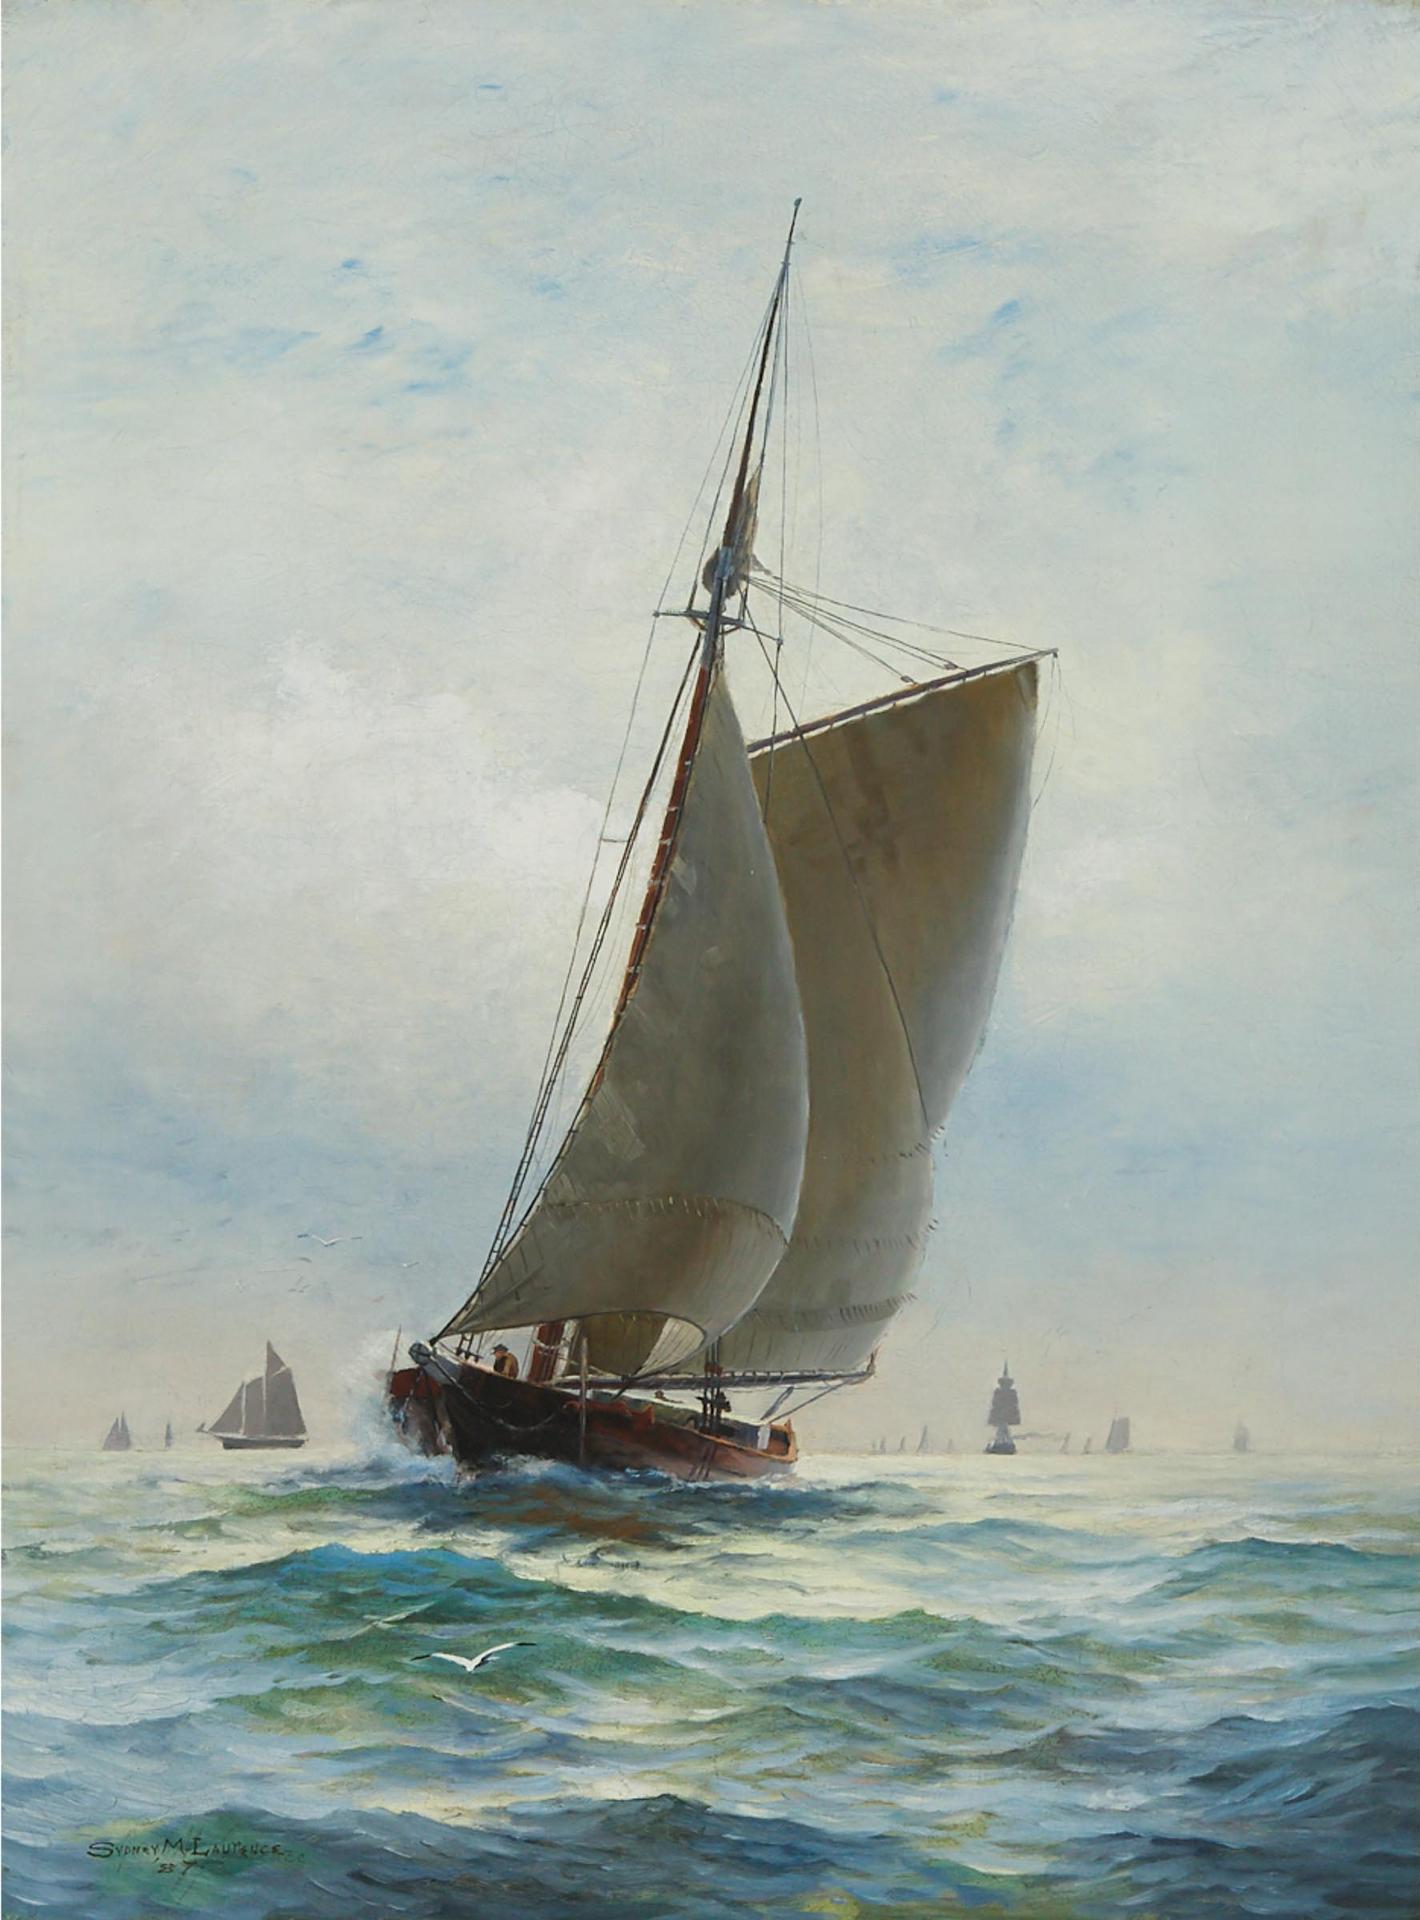 Sydney Mortimer Laurence (1865) - In Full Sail, 1887